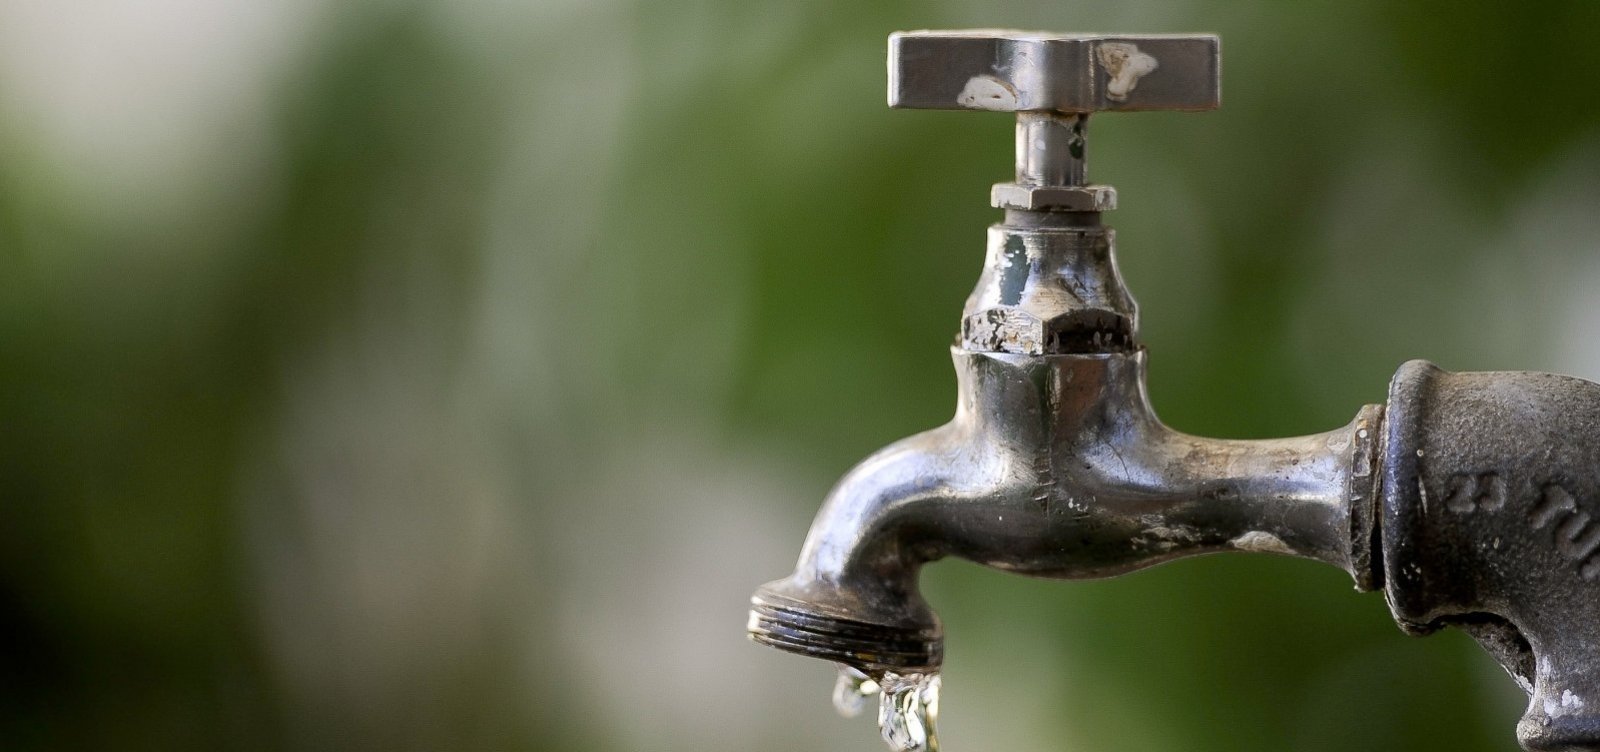 Fornecimento de água será suspenso em bairros de Dias D'Ávila nesta terça